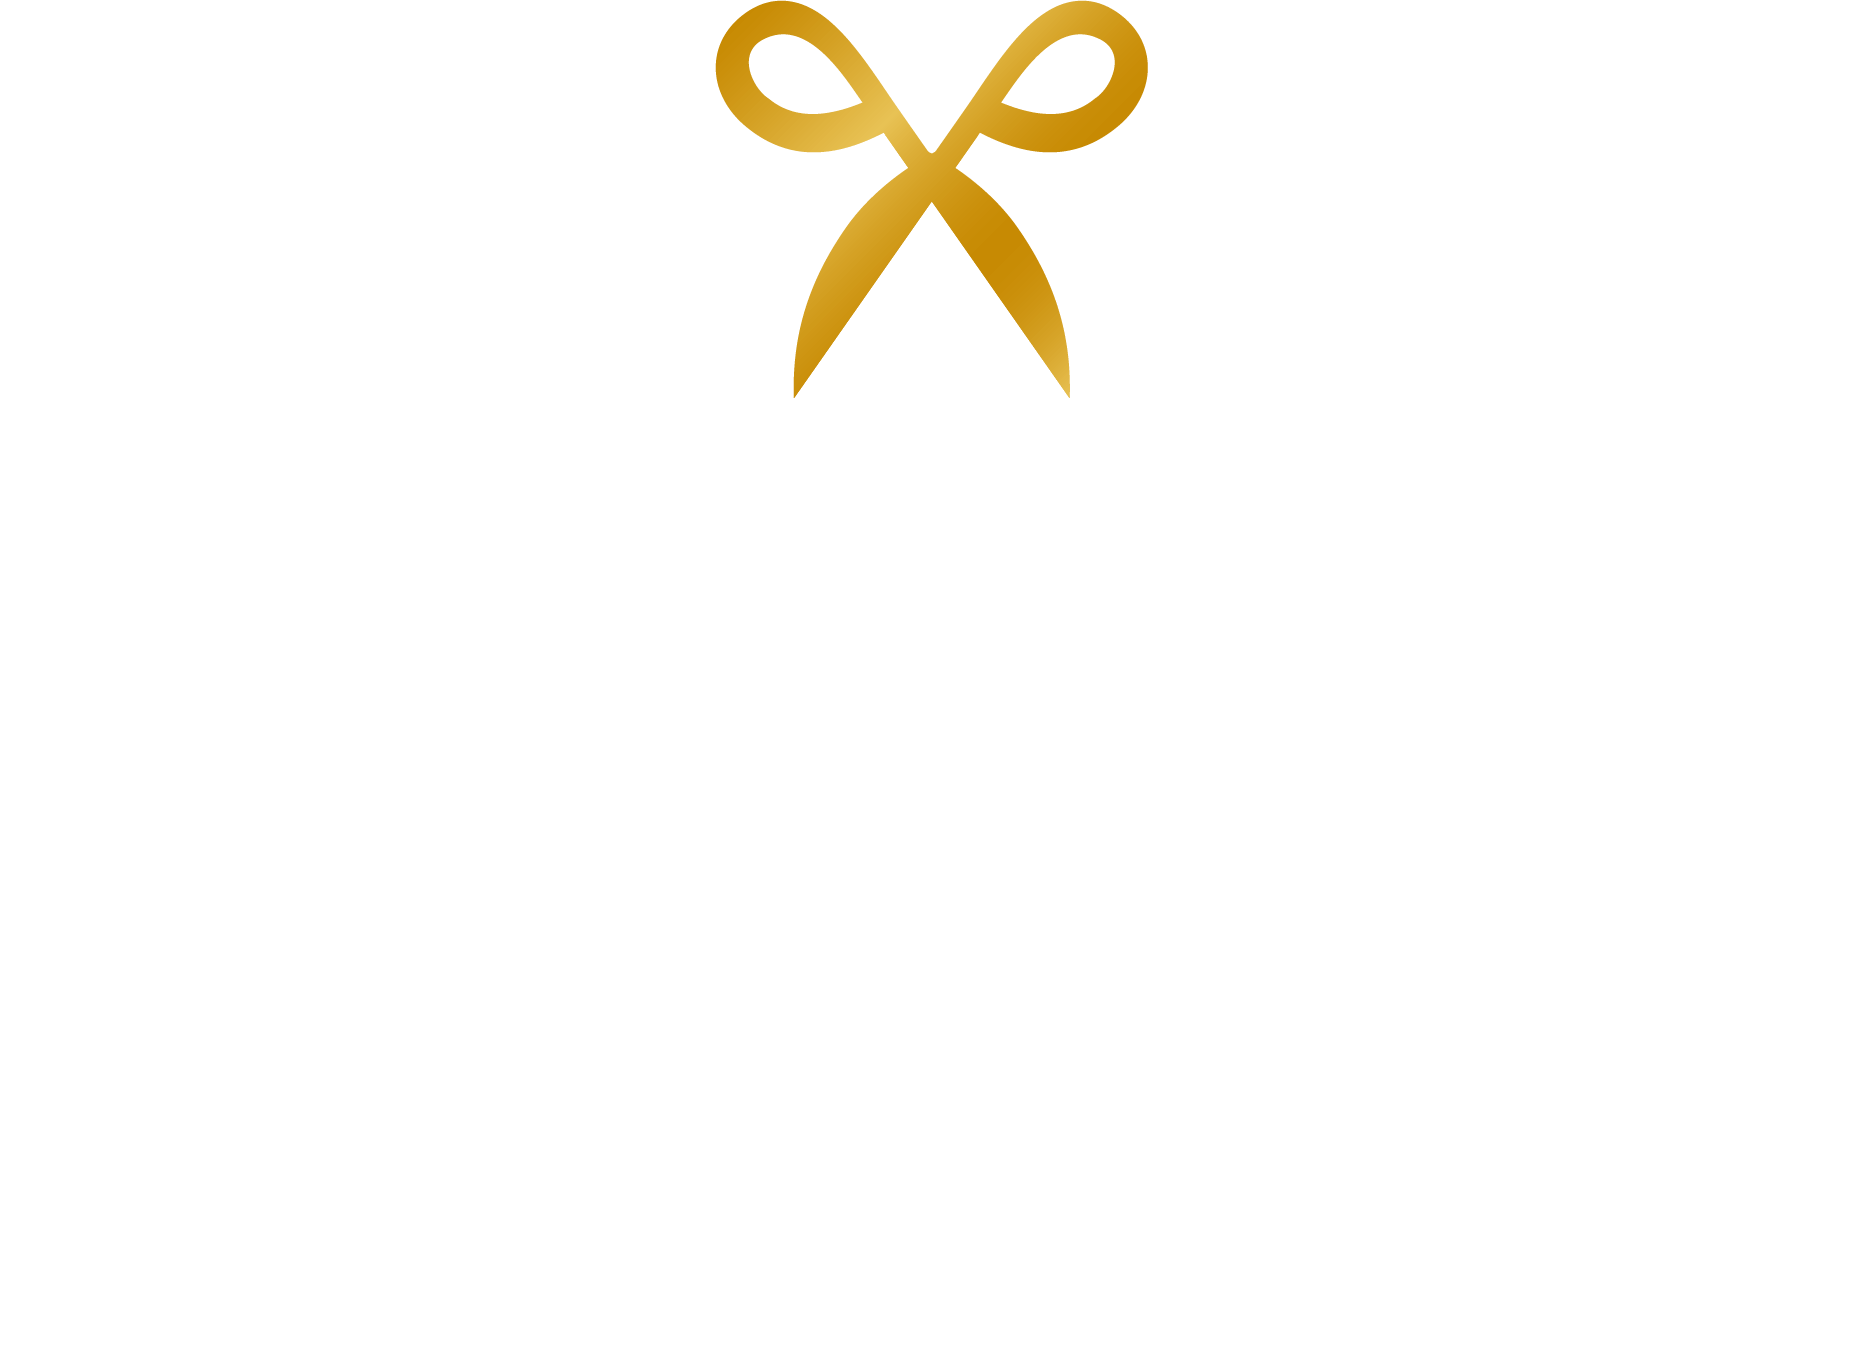 Wild bear hair&spa